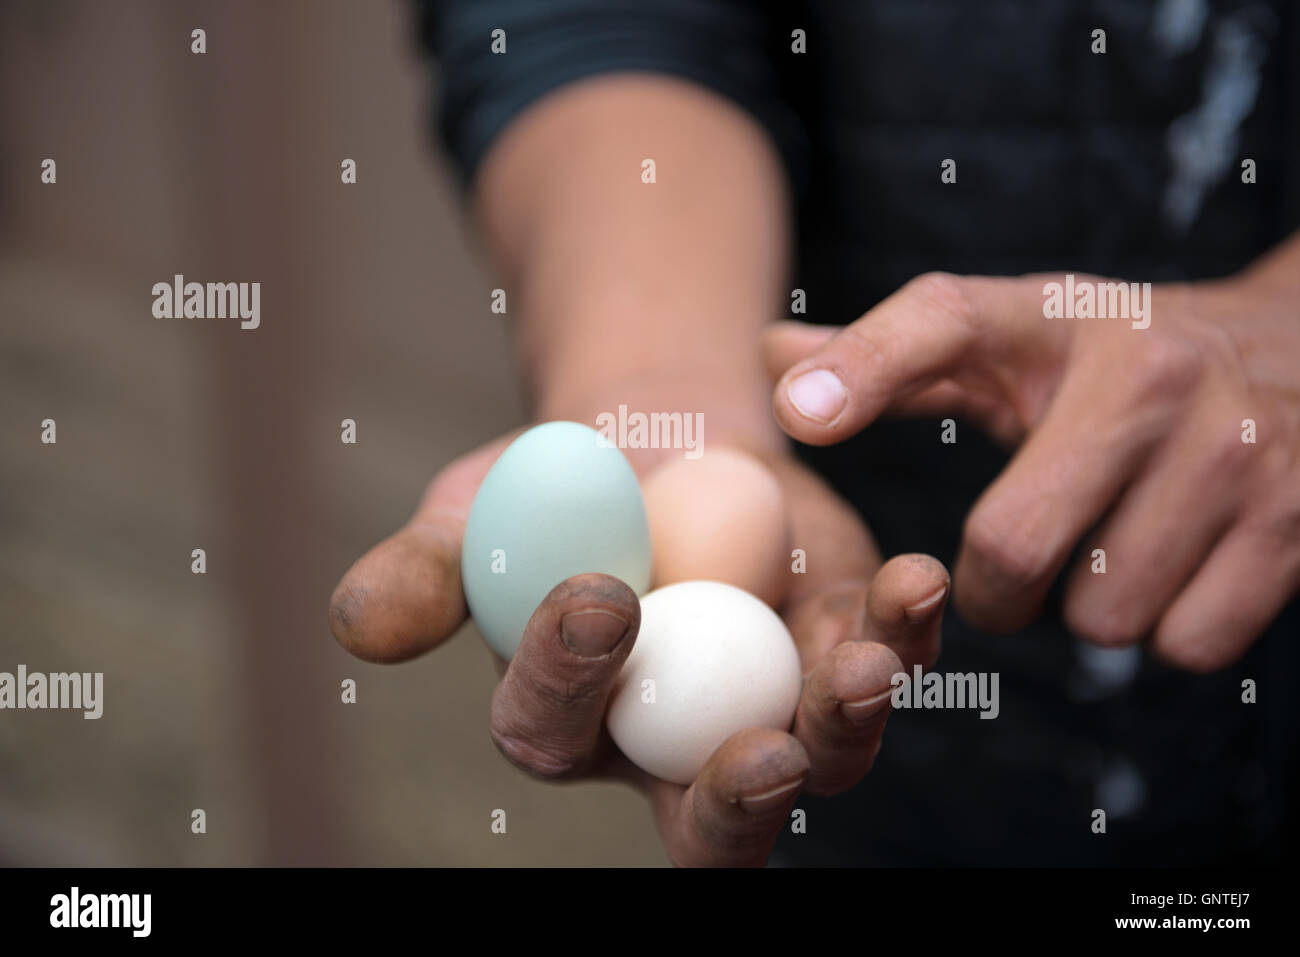 Hombre sujetando y apuntando a los huevos de pollo de diferentes colores Foto de stock